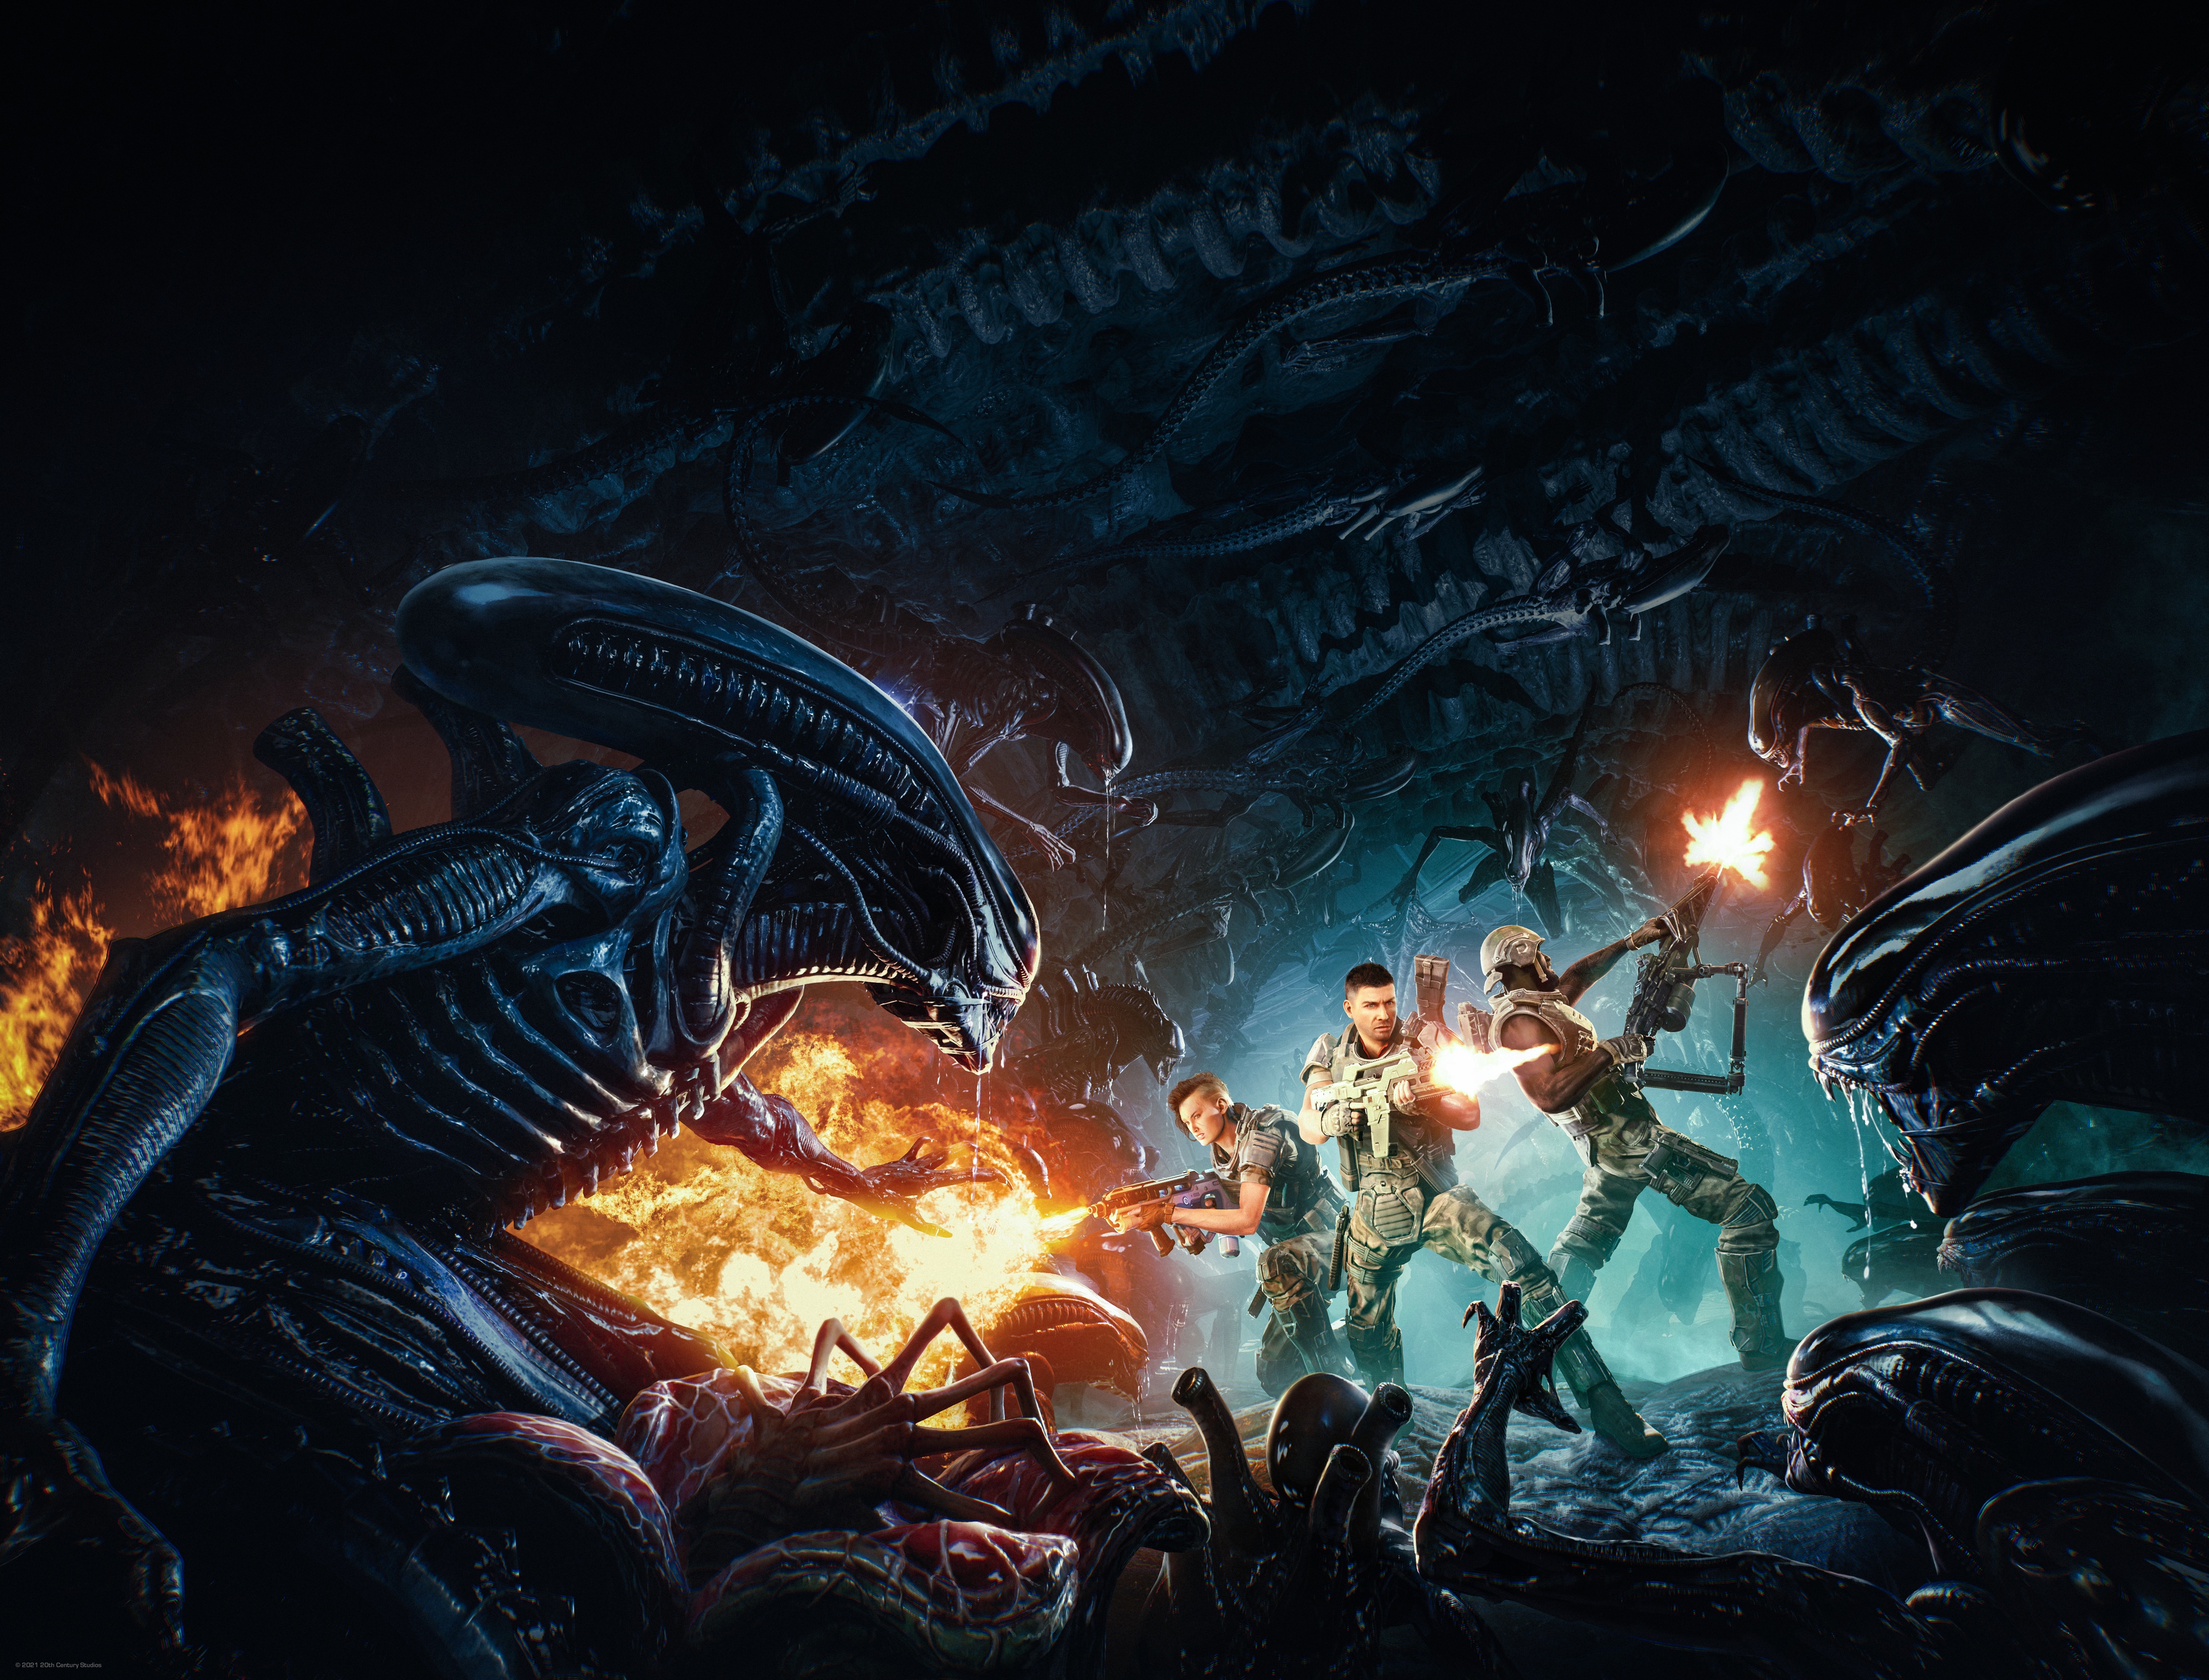 Aliens Versus Predator - Metacritic